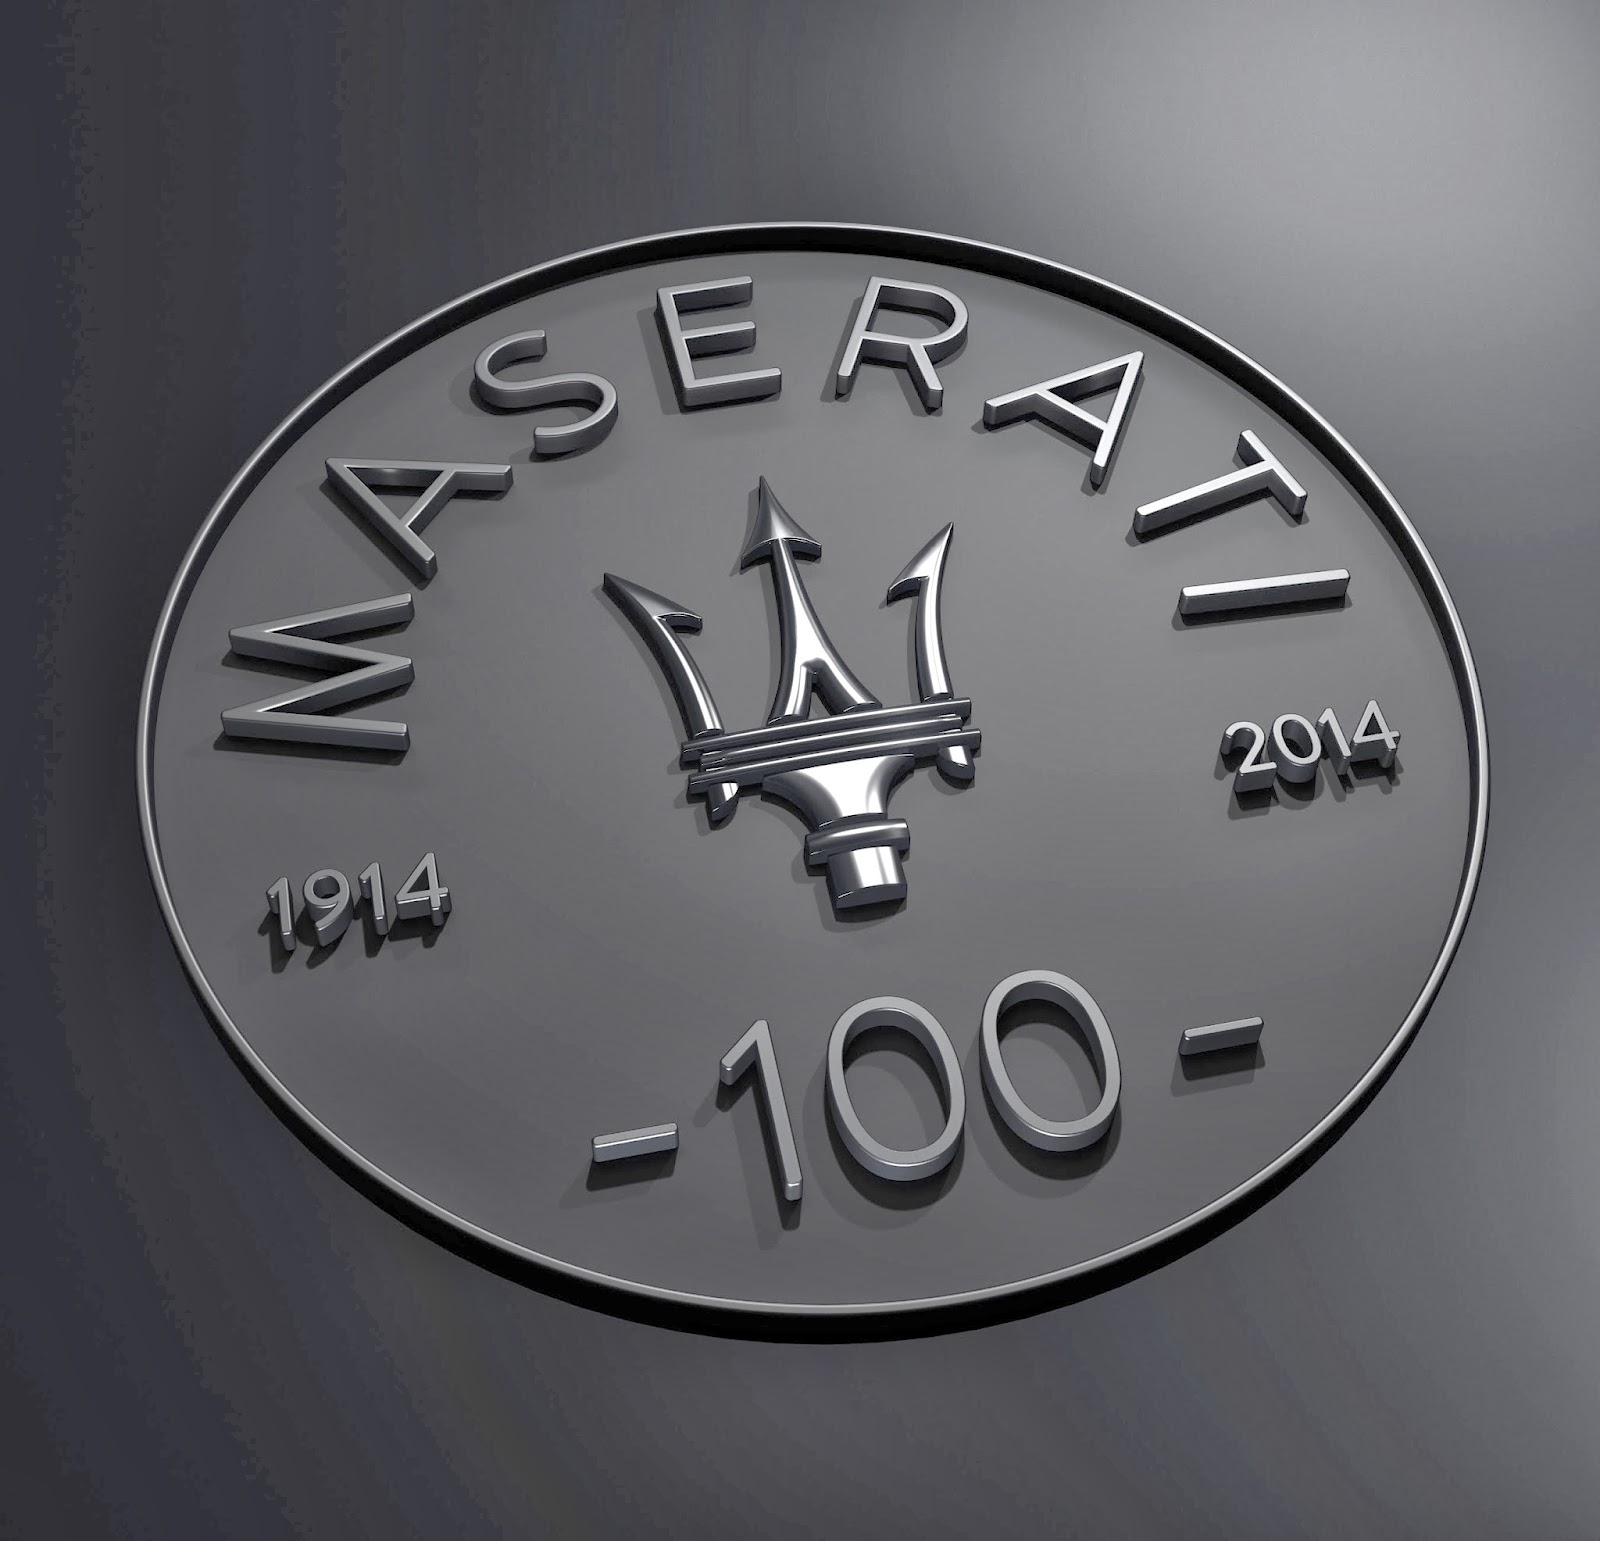 De exclusieve sportwagen Maserati: van 1914 tot nu